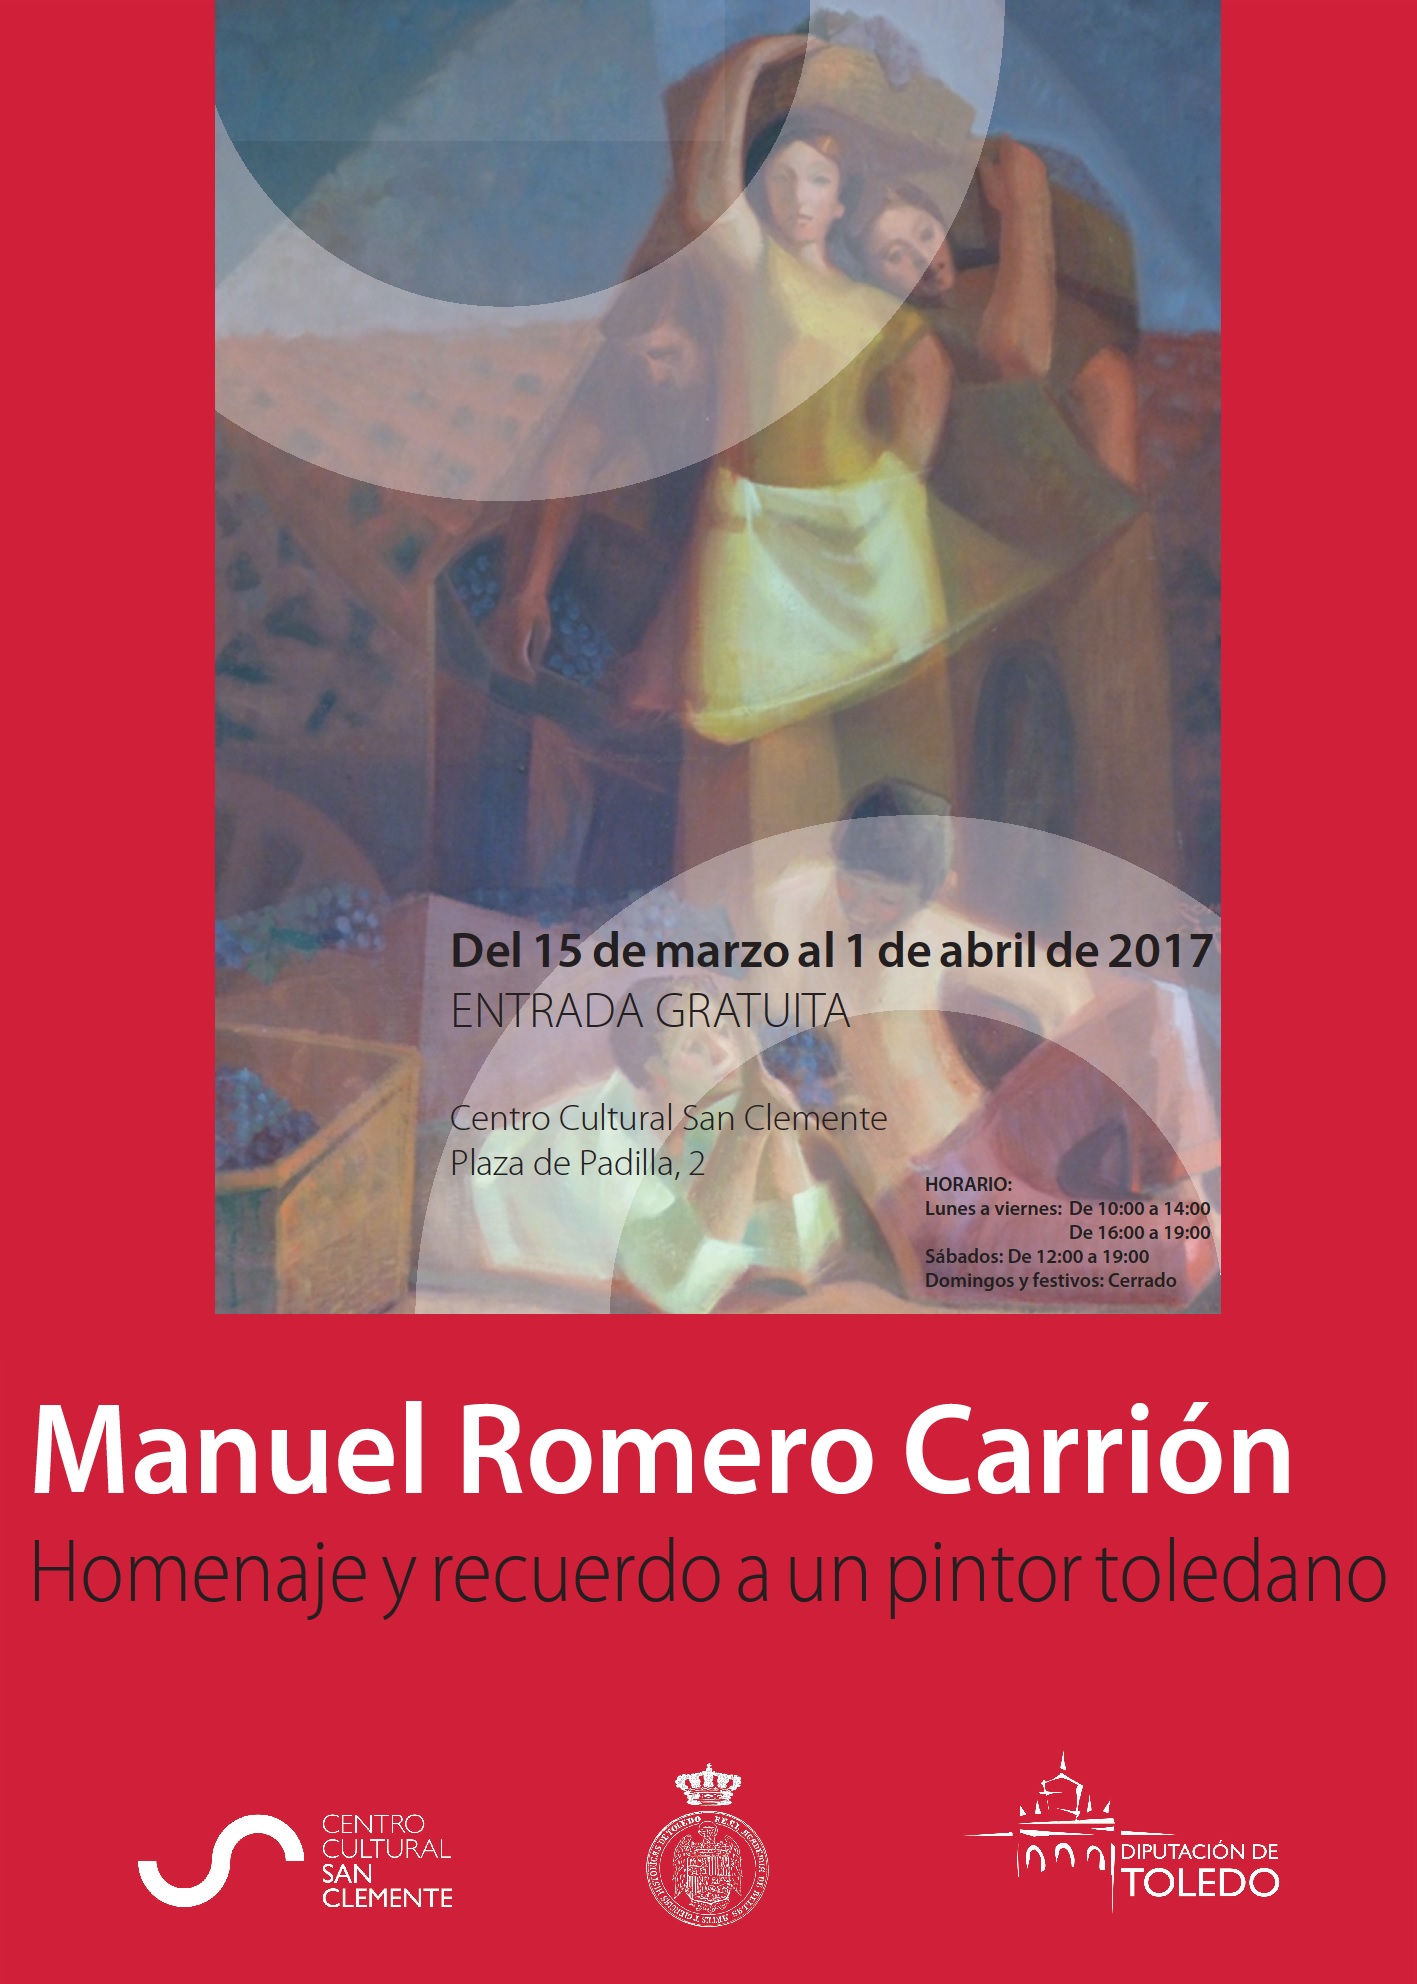 Manuel Romero Carrión